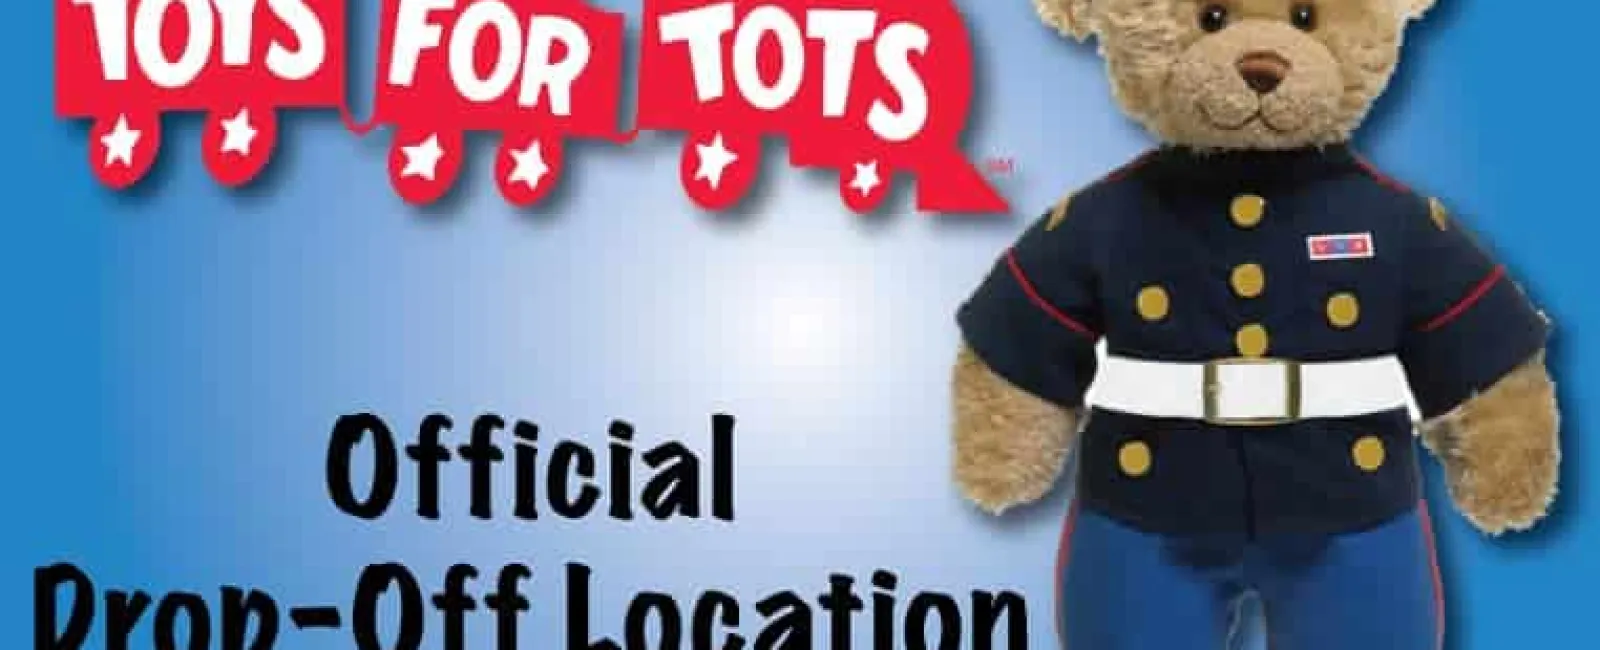 a teddy bear wearing a uniform